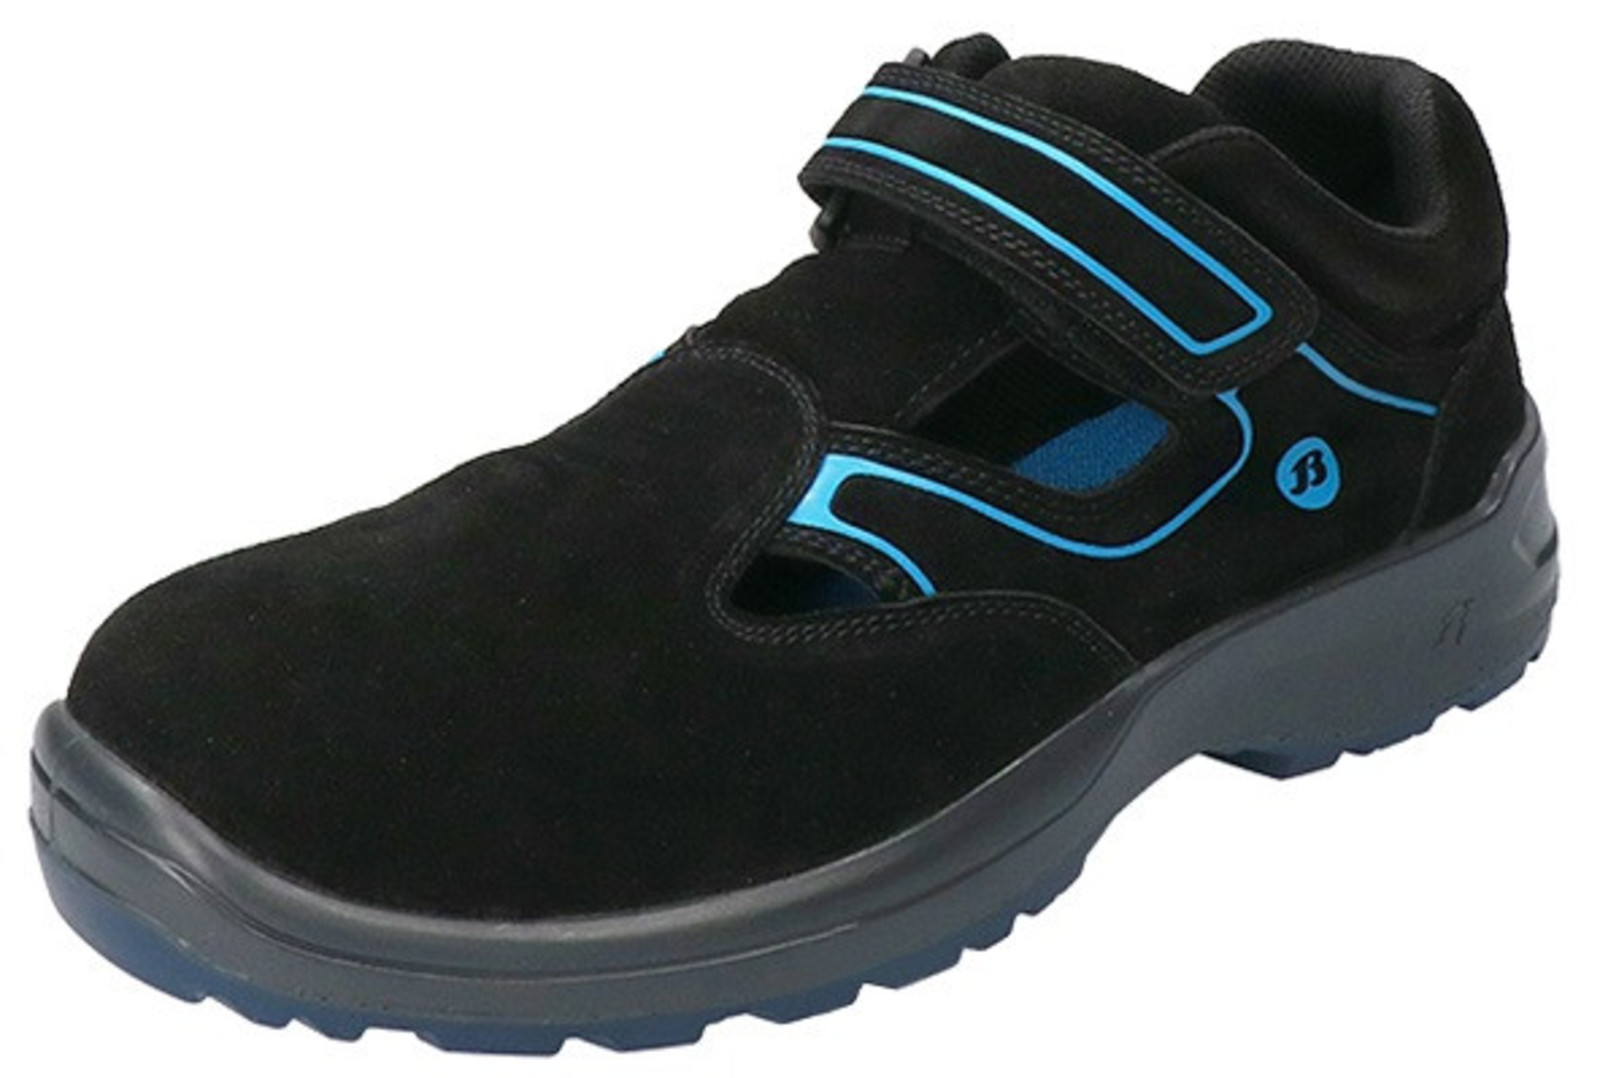 Bezpečnostné sandále Baťa Falcon ESD S1 - veľkosť: 47, farba: čierna